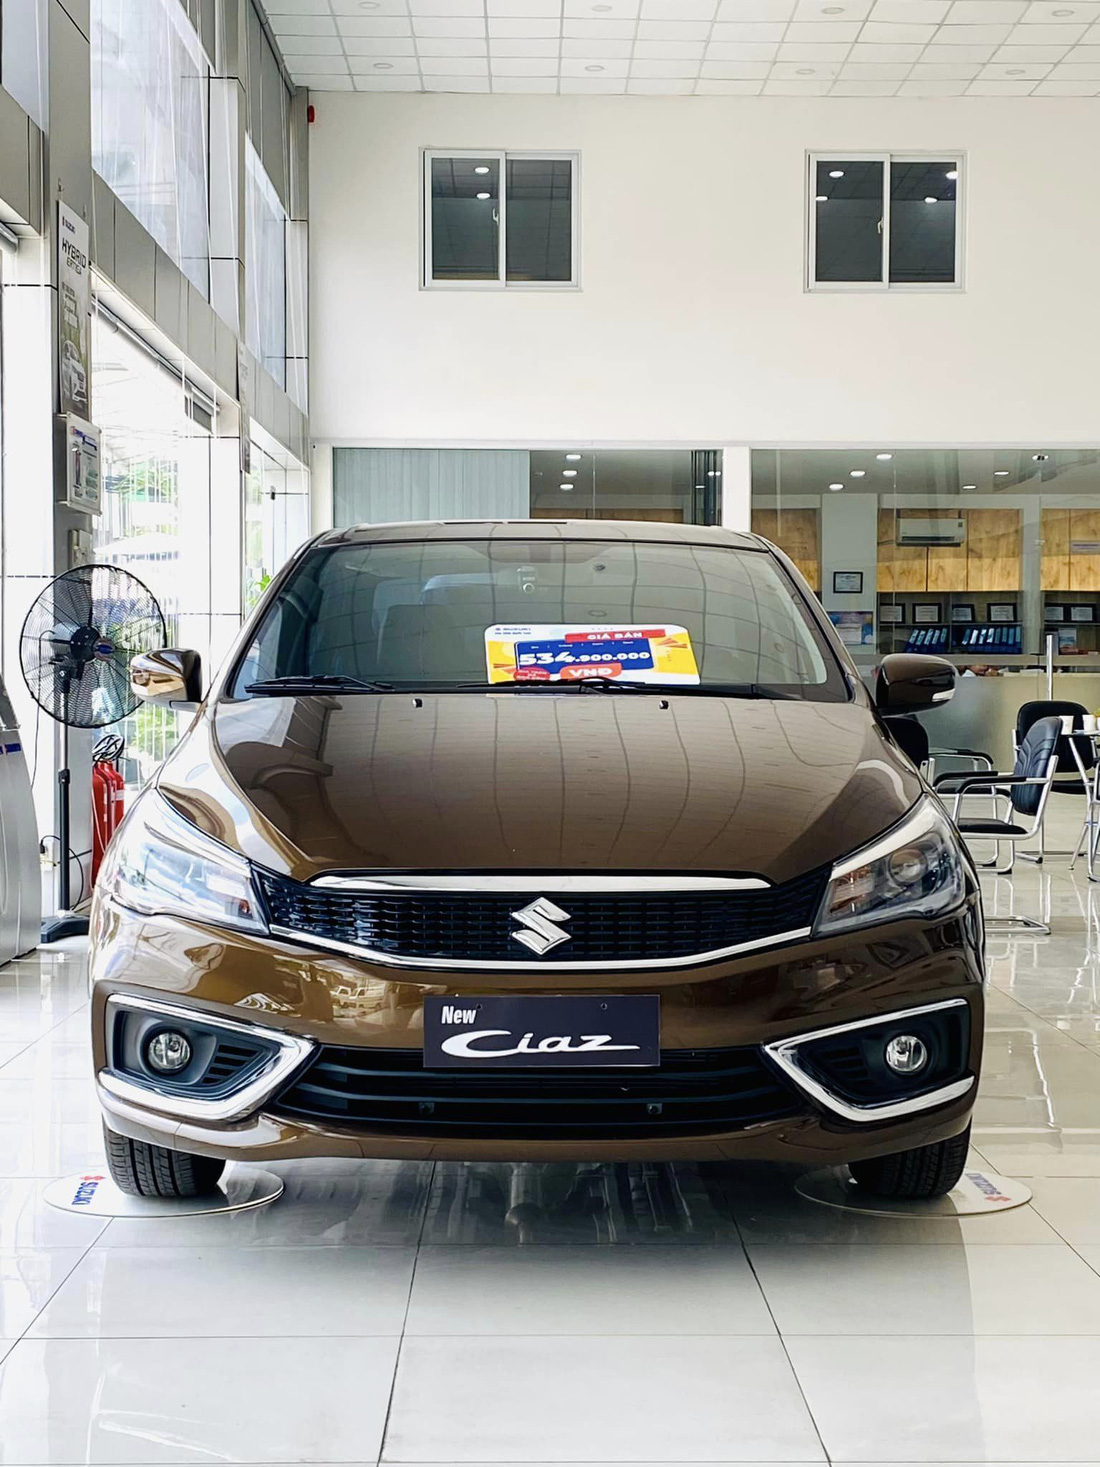 Suzuki Ciaz đang bán ở Việt Nam là phiên bản nâng cấp giữa vòng đời (facelift) ra mắt năm 2020. Đến đầu năm 2022, xe nhận một số thay đổi nhẹ ở ngoại hình với bộ tem thể thao ở hông. Các trang bị ngoại thất khác vẫn giữ nguyên: đèn chiếu sáng LED, mâm đa chấu 16 inch. Xe được dán phim cách nhiệt sẵn ngay từ nhà máy - Ảnh: Đại lý Suzuki/Facebook